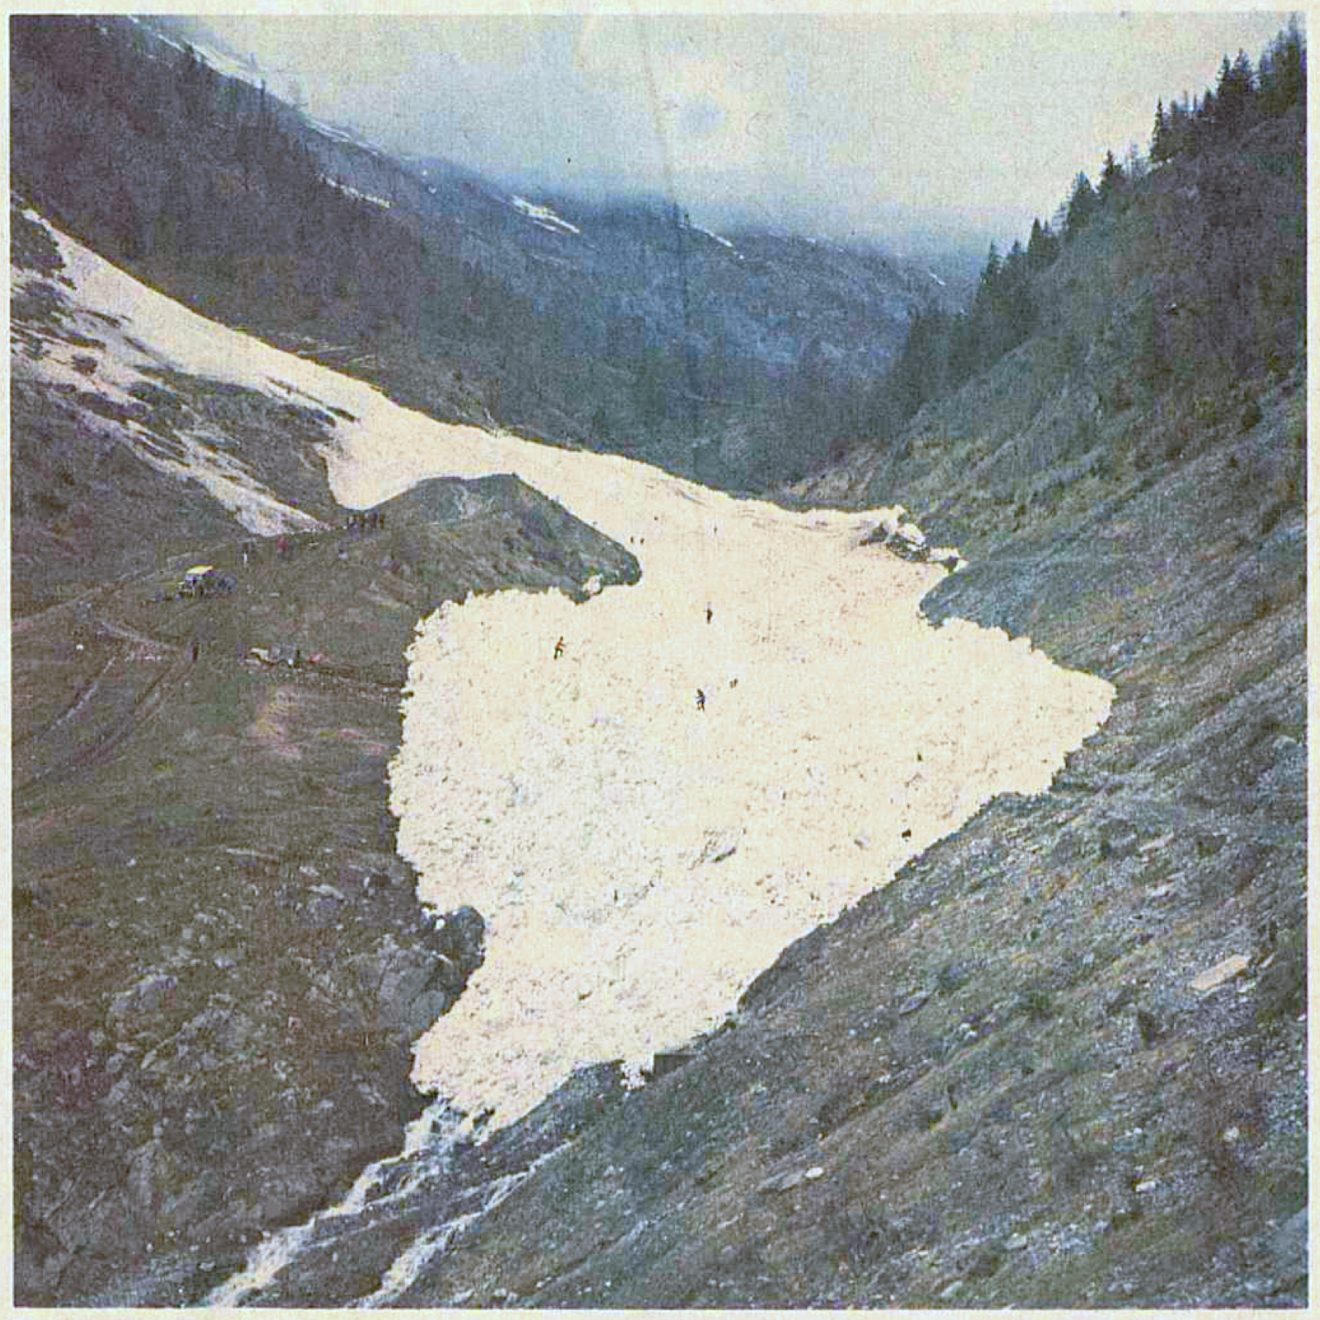 Commémoration des 50 ans de la tragique avalanche de Chiboz